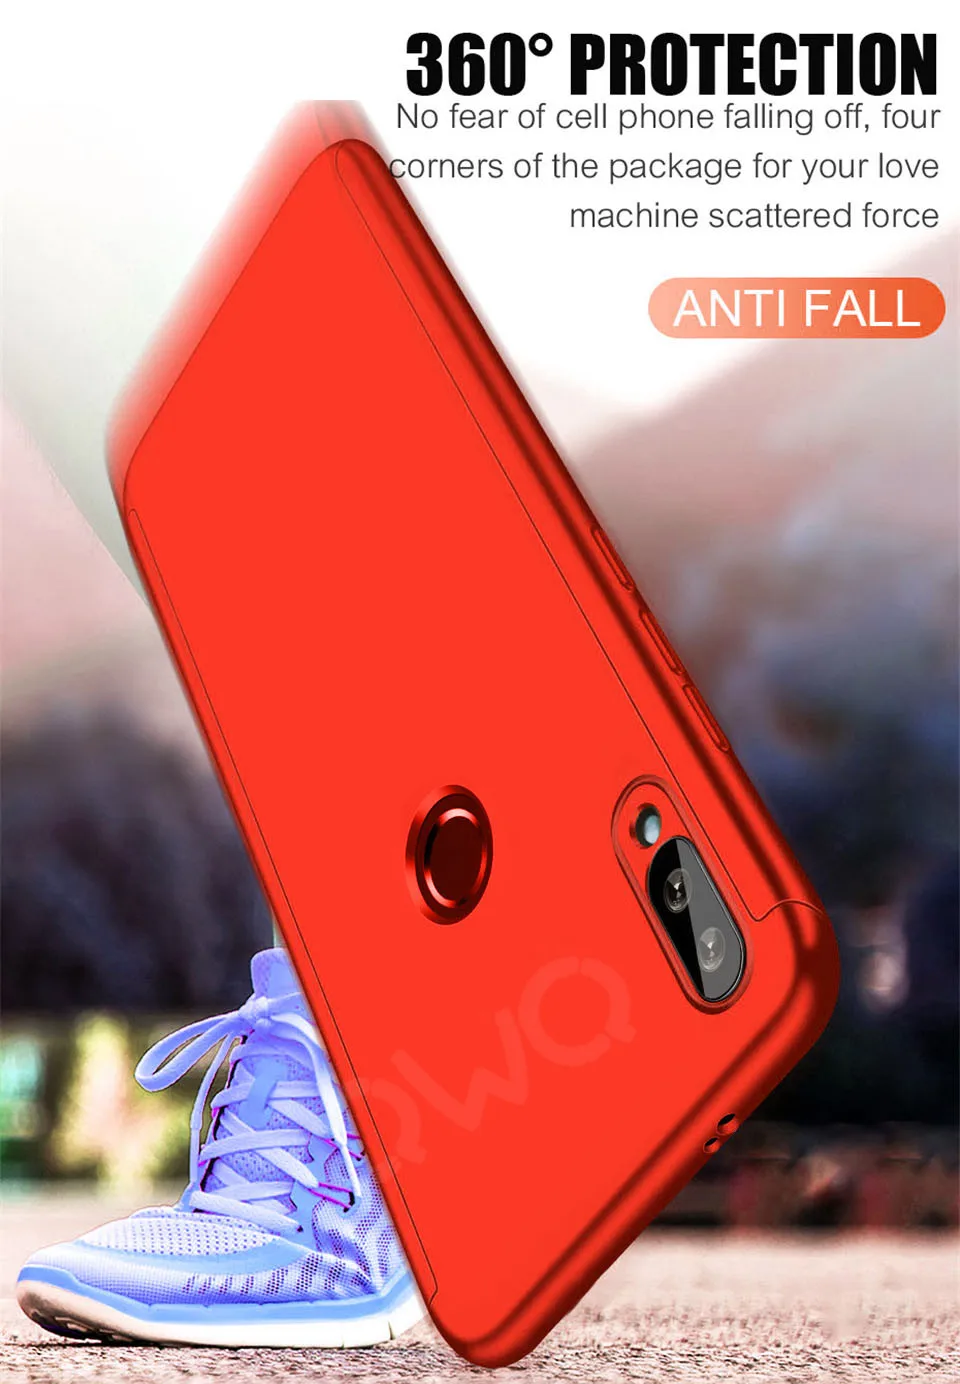 360 градусов матовый чехол для телефона Xiaomi Redmi note 7 5 6 4 k20 pro 6a 4x 5A полная защита для Redmi 5 plus 4a s2 PC задняя крышка